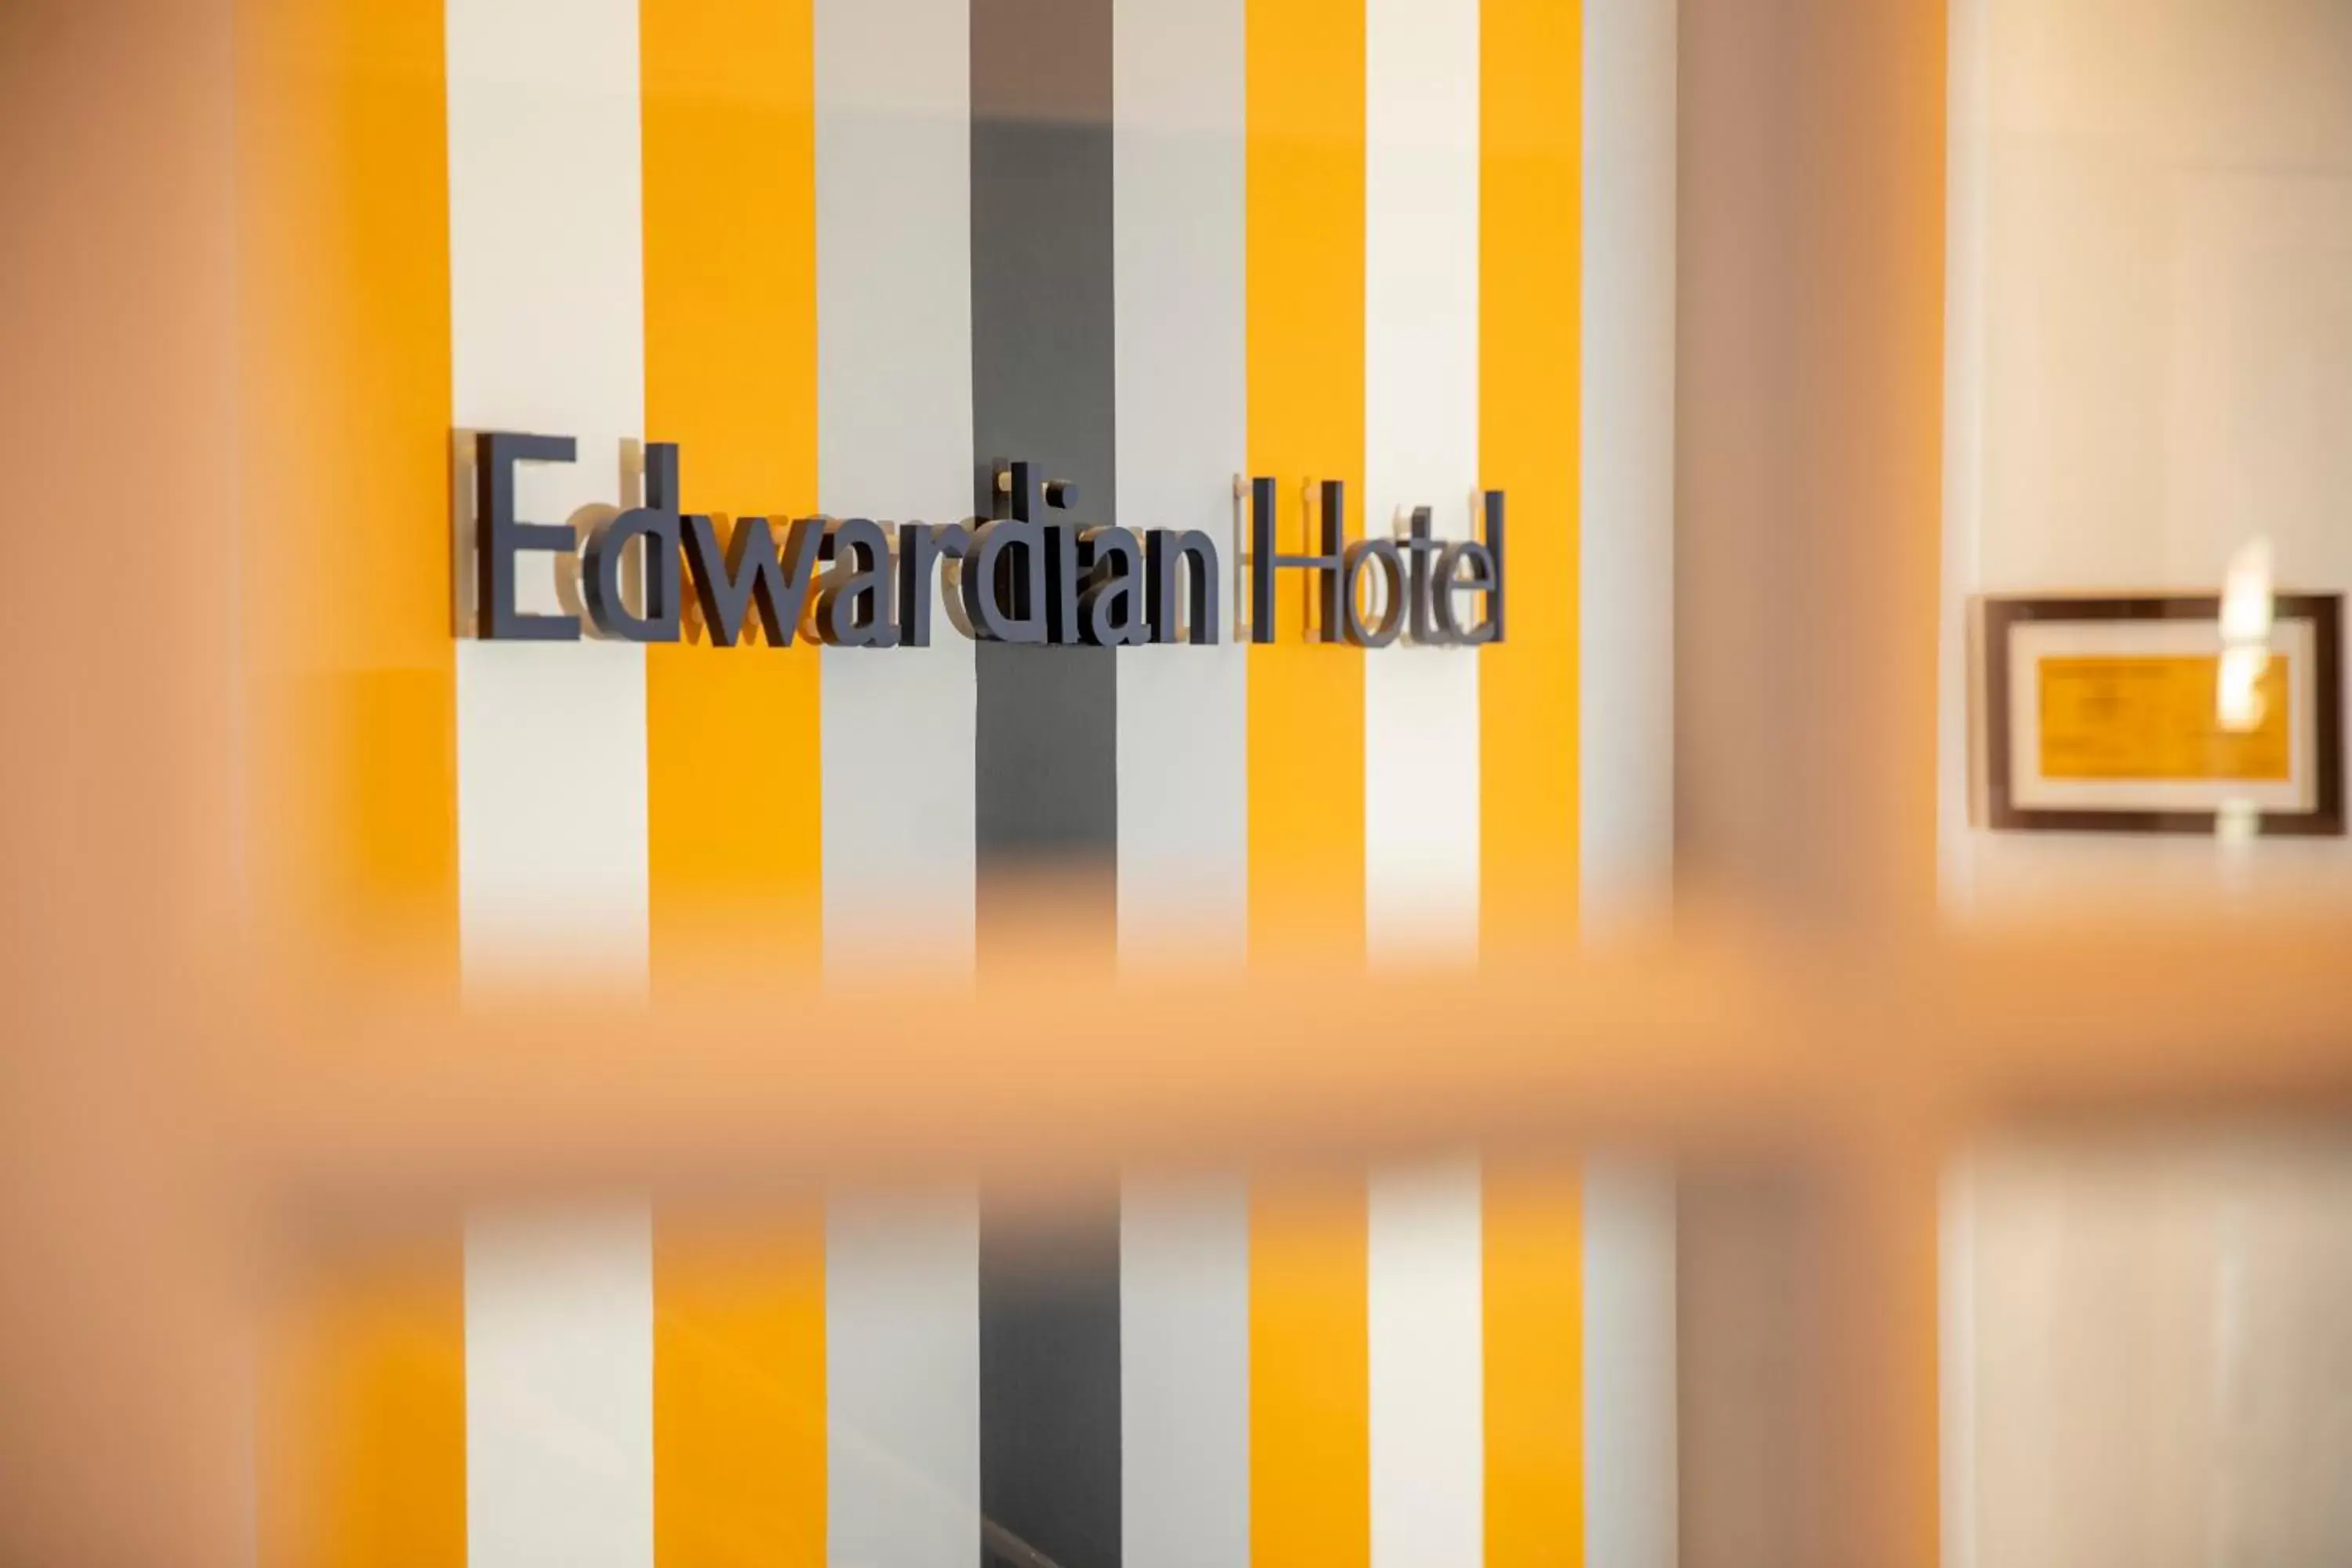 Lobby or reception in Edwardian Hotel